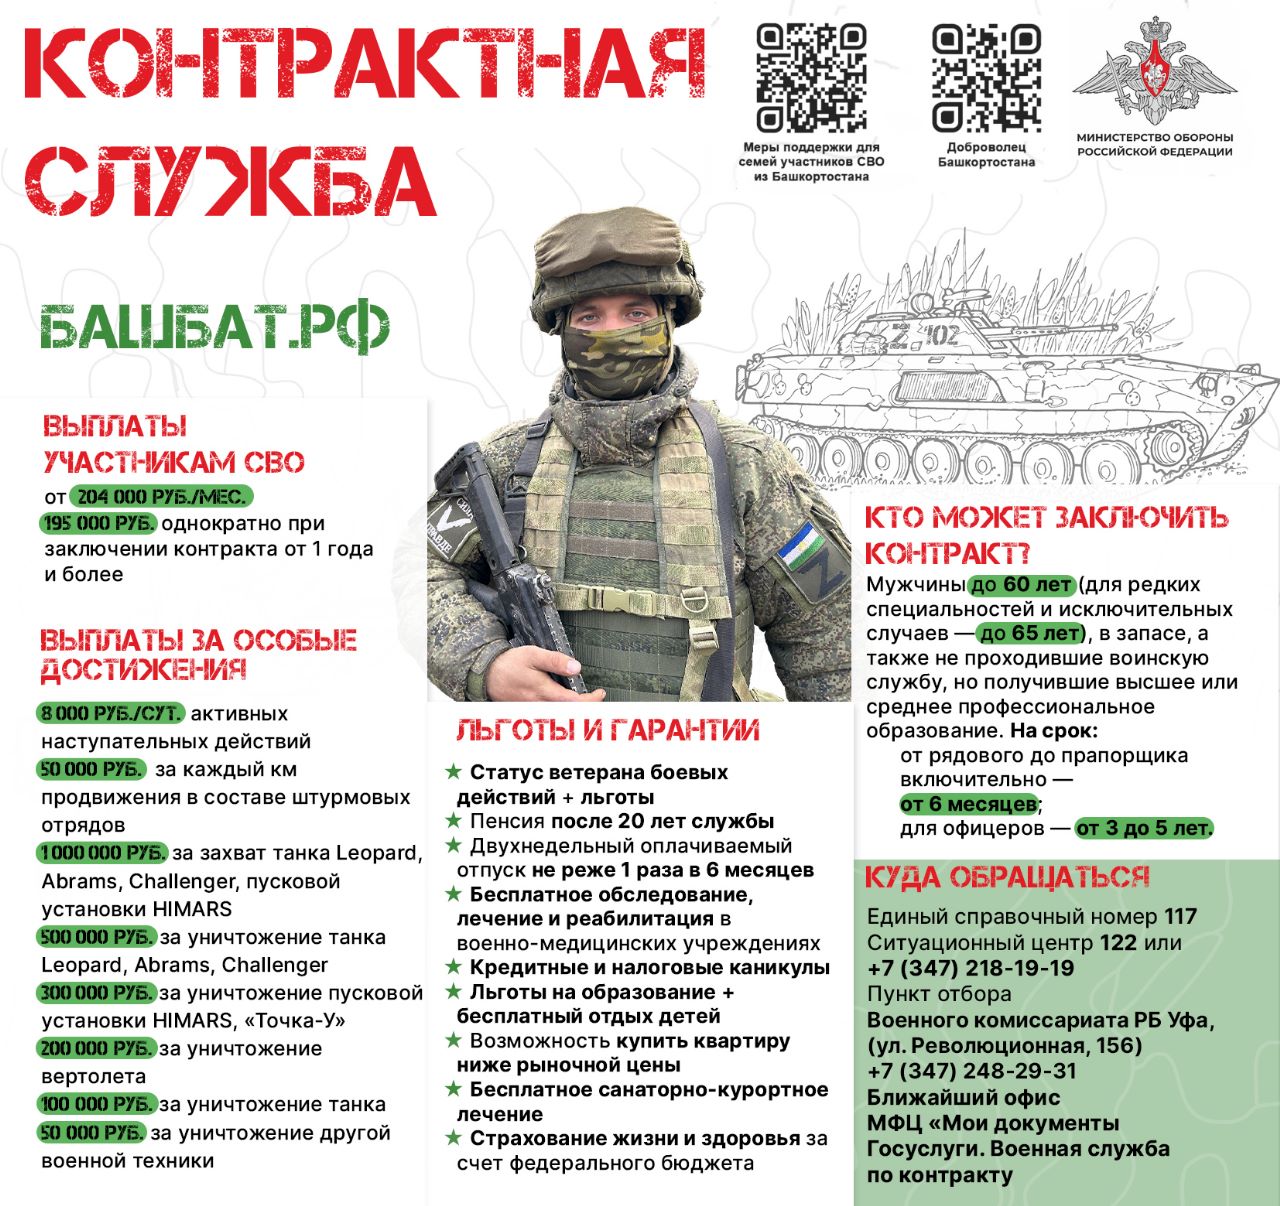 В офисах МФЦ «Мои документы» Башкортостана открылись пункты отбора на военную службу по контракту